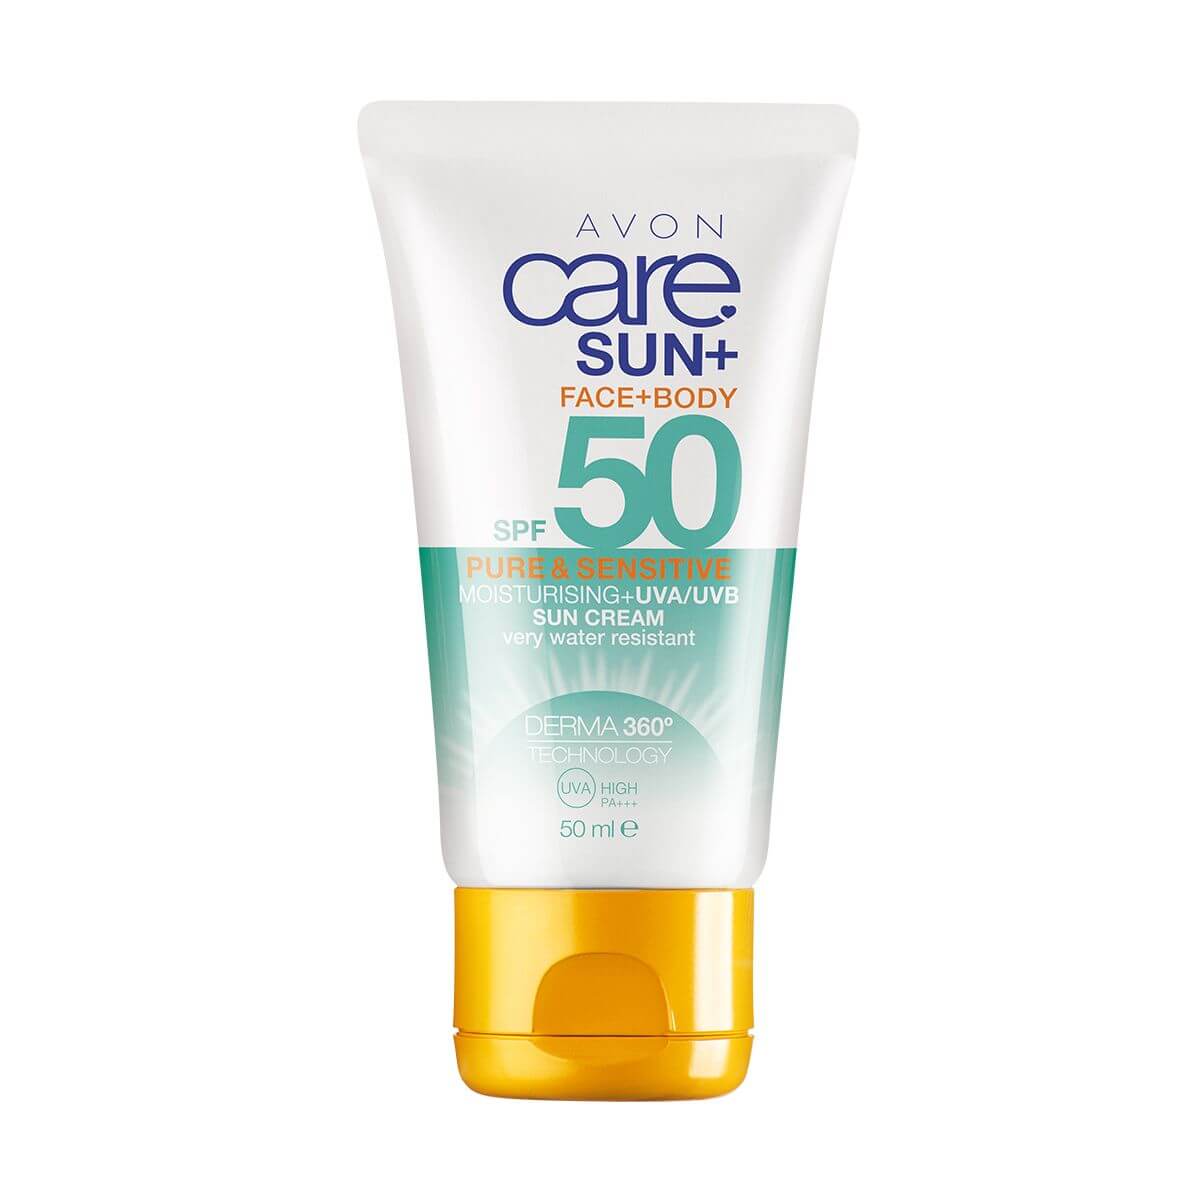 Care Sun+ Pure et Sensible Crème Solaire Corps et Visage SPF50 50 ml